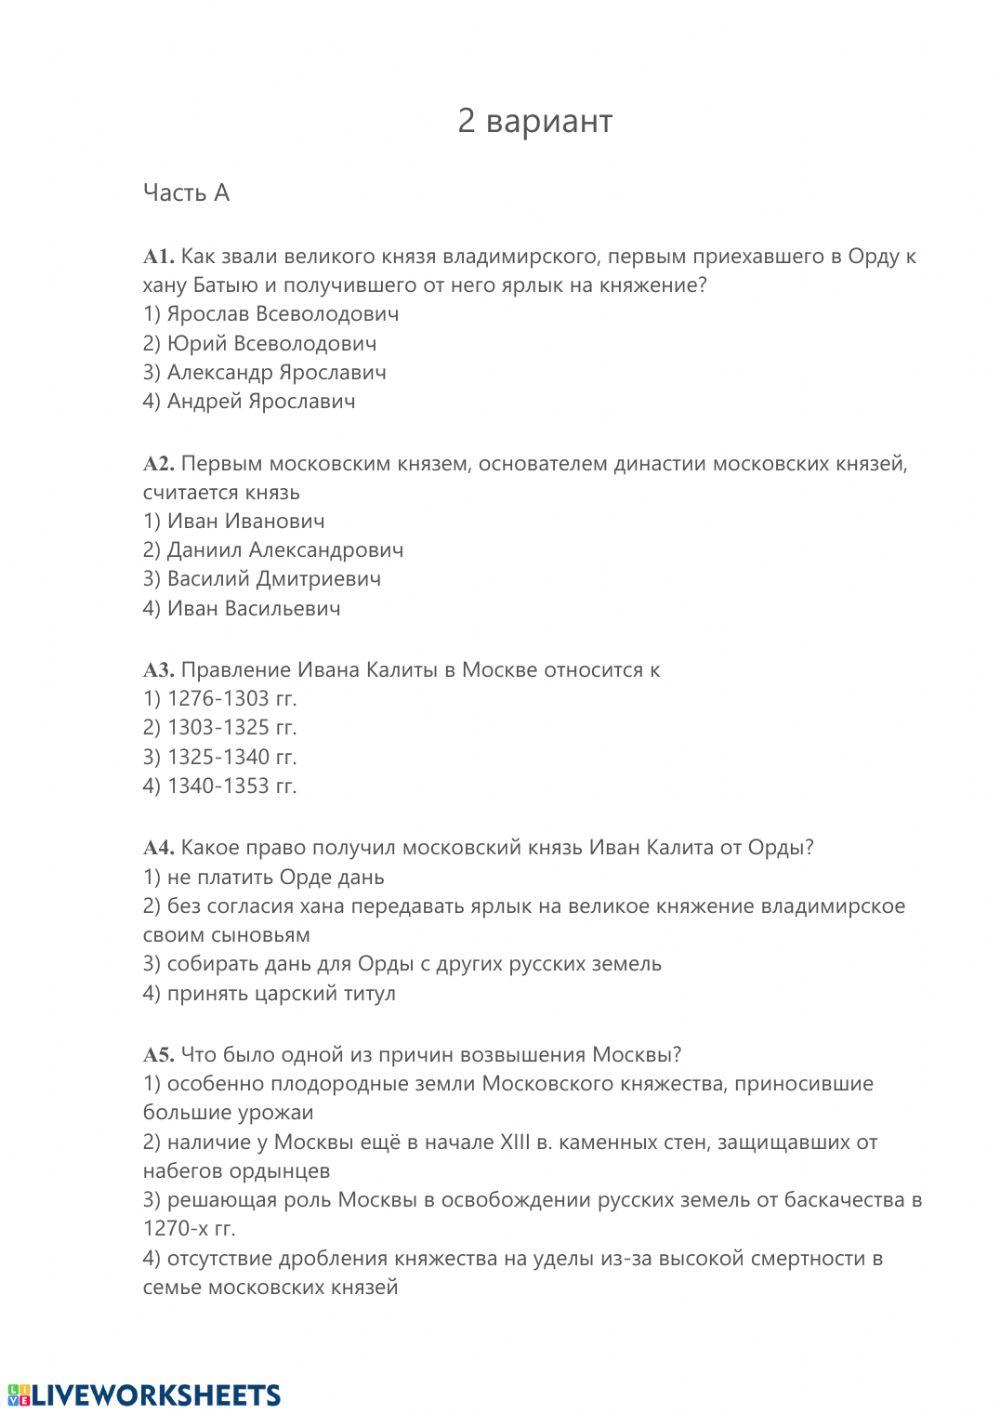 Тест Усиление Московского княжества